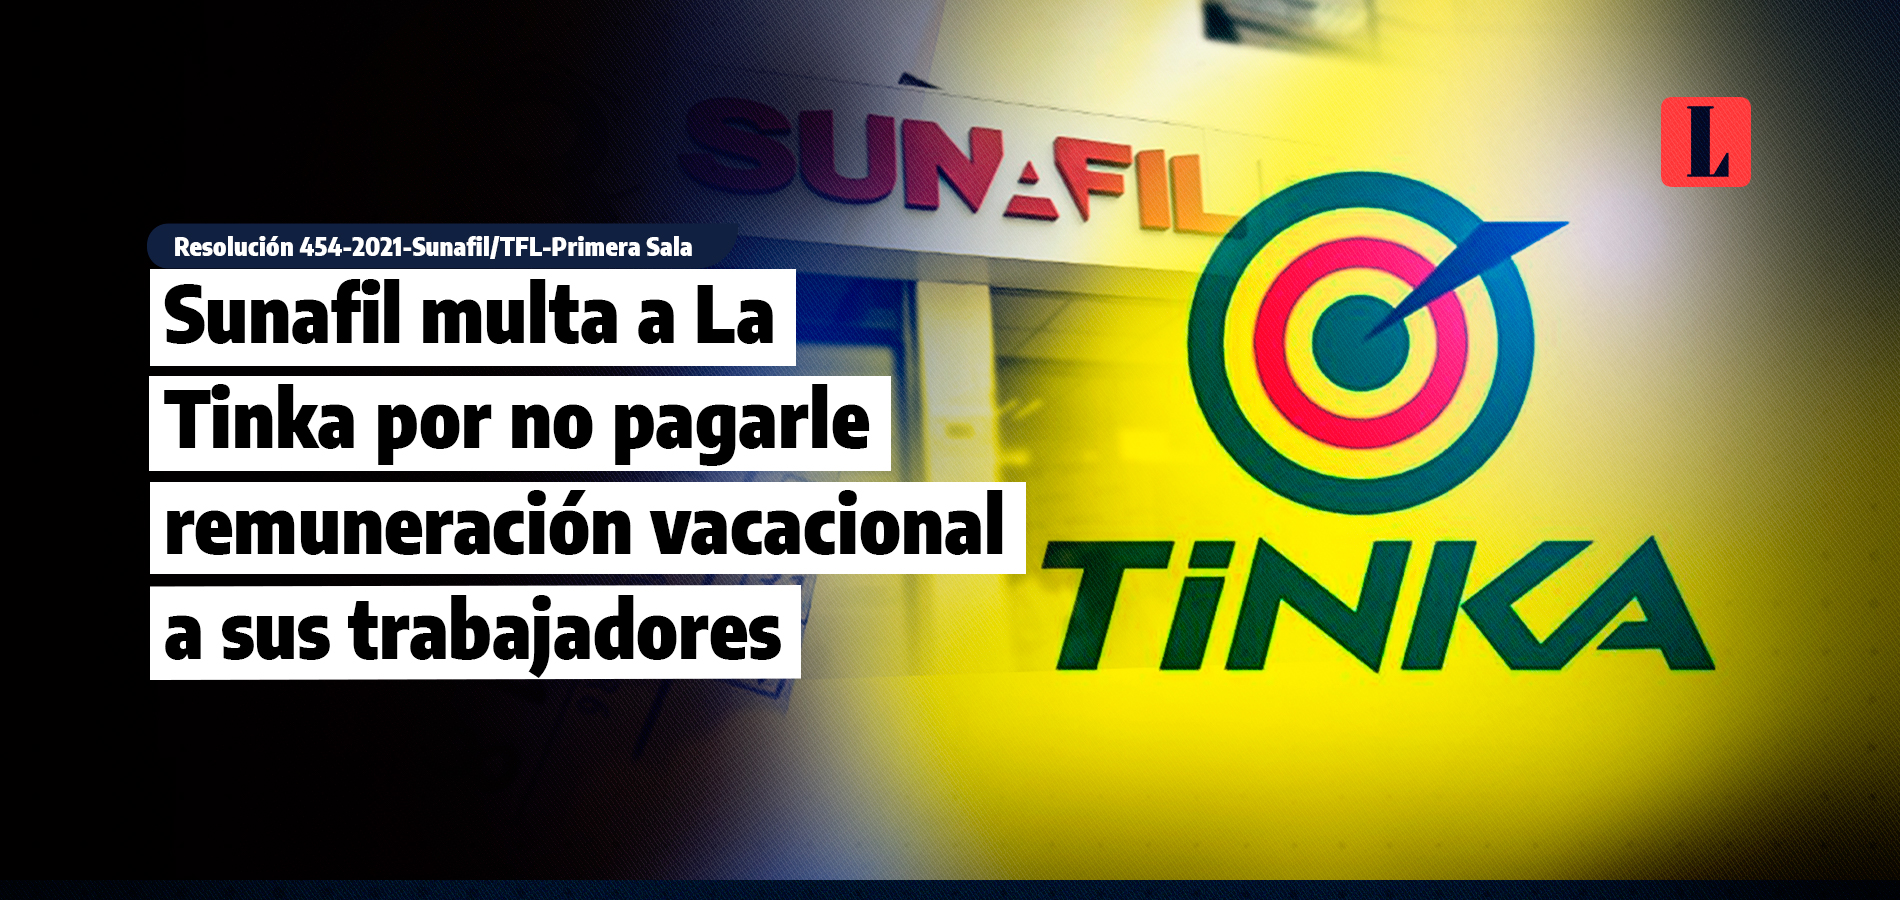 Sunafil multa a La Tinka por no pagarle remuneración vacacional a sus trabajadores